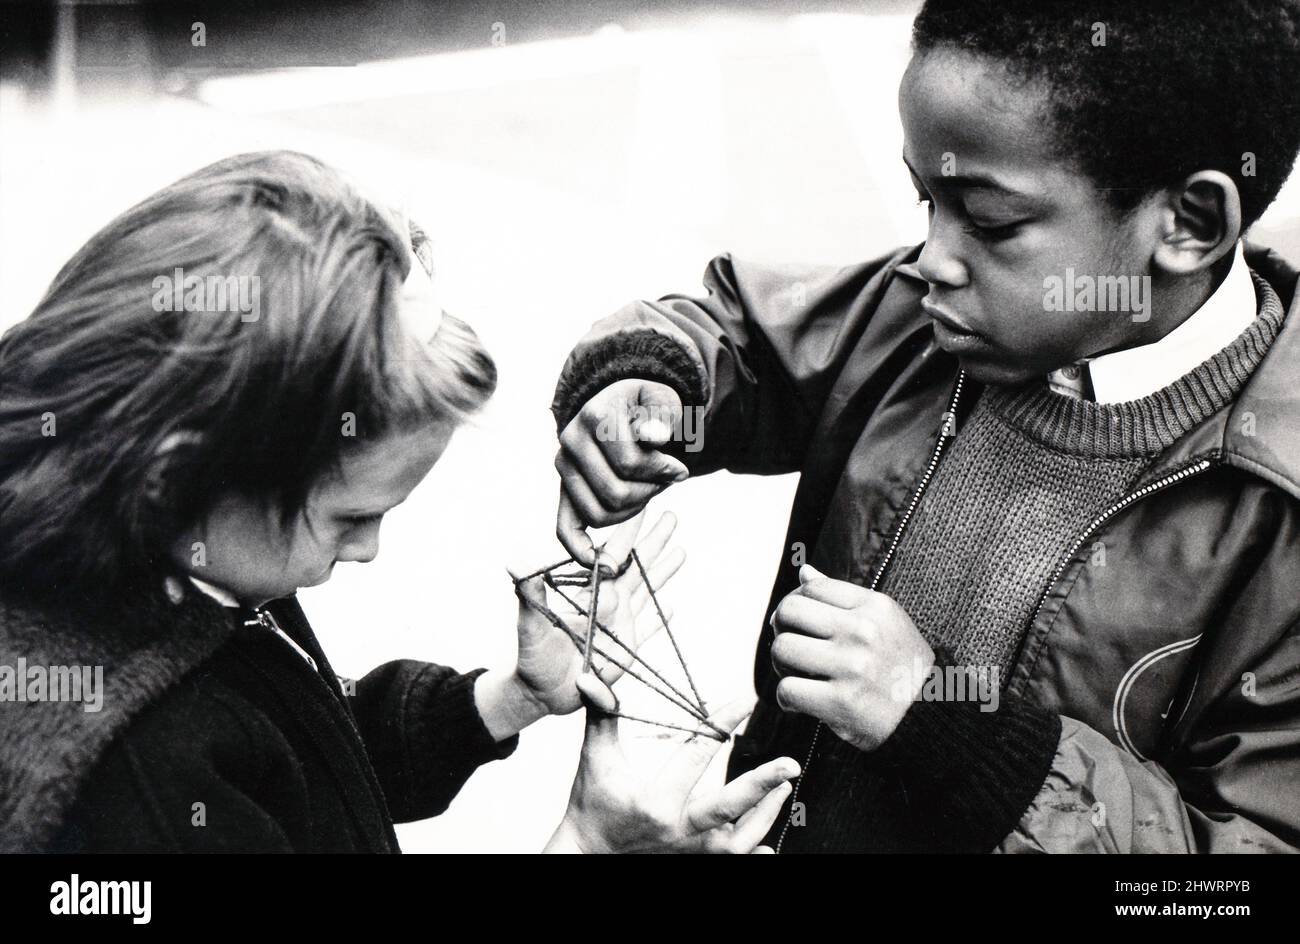 Ein junges Mädchen und ein Junge spielen ein altmodisches Spiel namens Cat's Cradle. Wiki beschreibt es als ein Spiel, bei dem verschiedene Saitenfiguren zwischen den Fingern erzeugt werden, entweder einzeln oder durch Übergeben einer Schnur hin und her. Um 1975 in einem Schulhof in Brooklyn, New York. Stockfoto